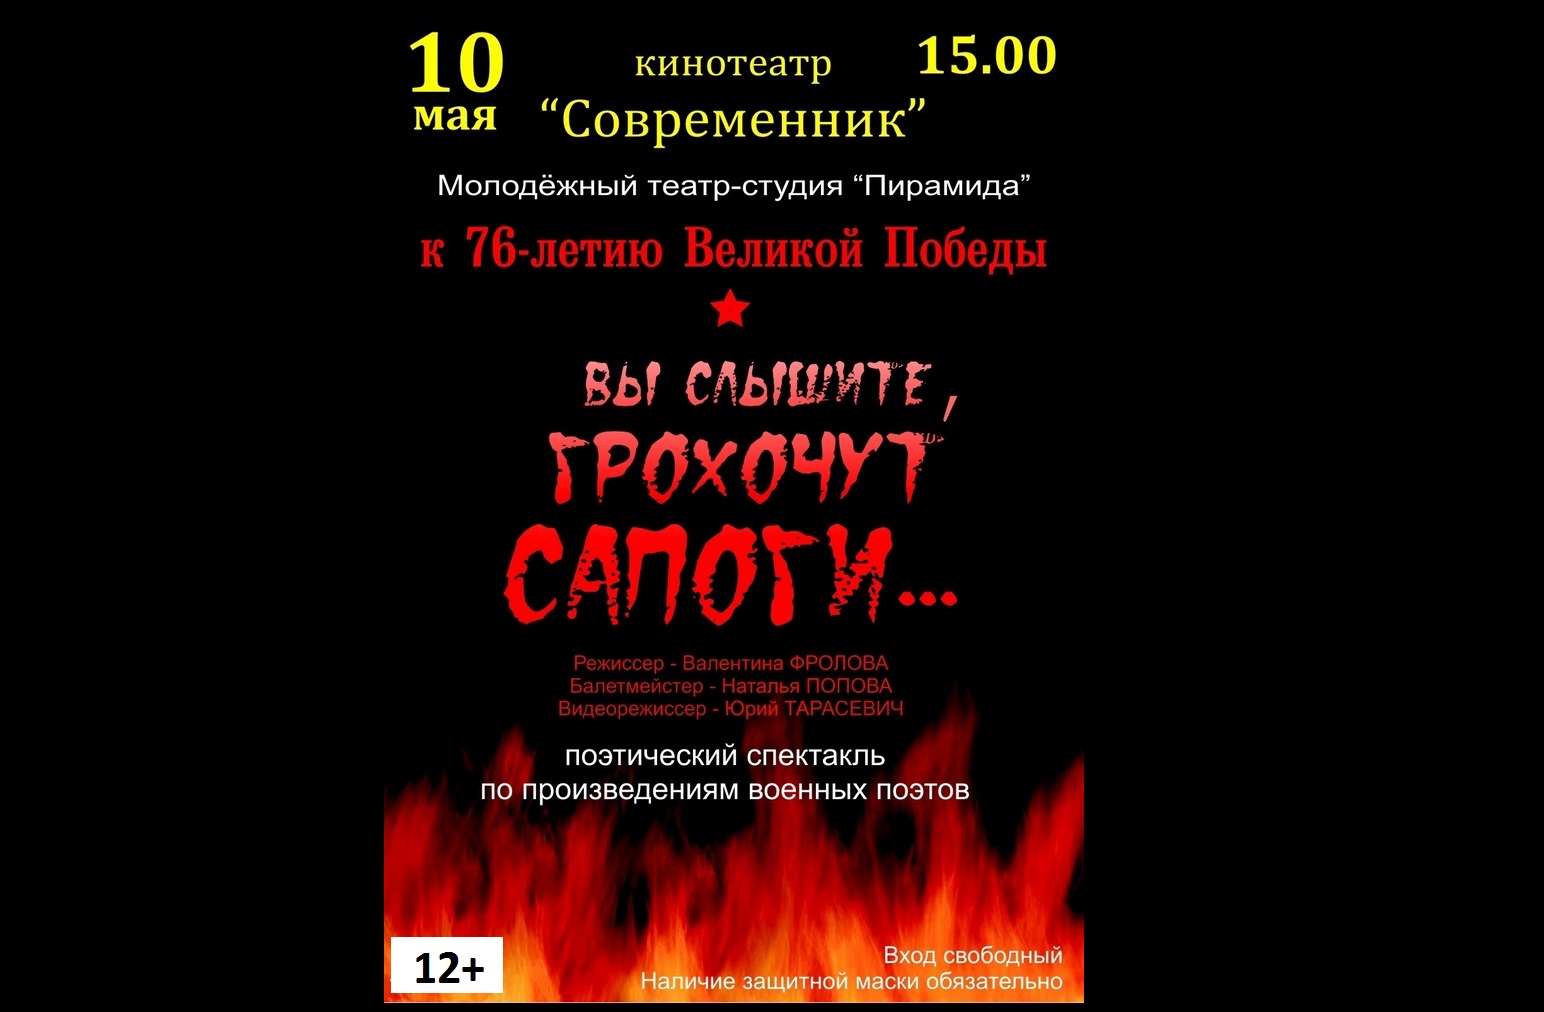 Смолян приглашают на поэтический спектакль, посвященный 76-летию Великой Победы